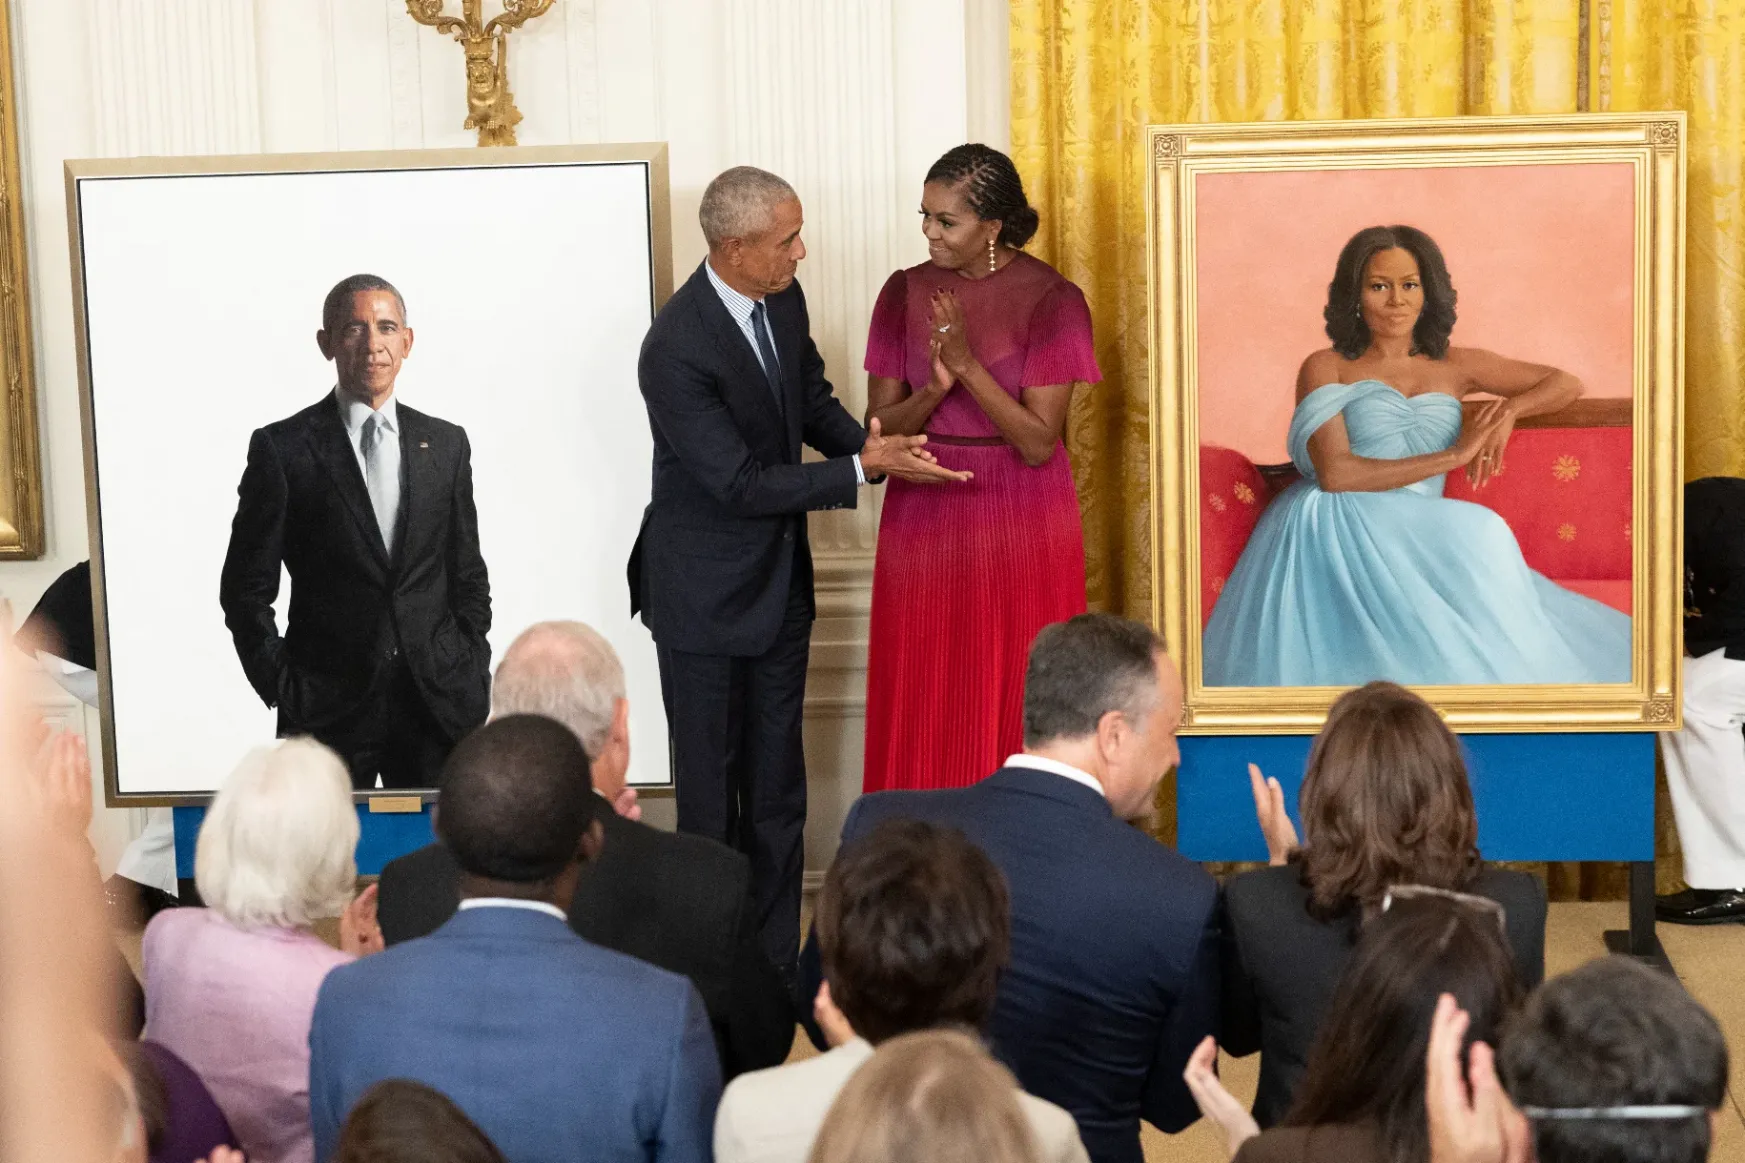 Visszatért a Fehér Házba az Obama házaspár, hogy bemutassák a róluk készült portrékat